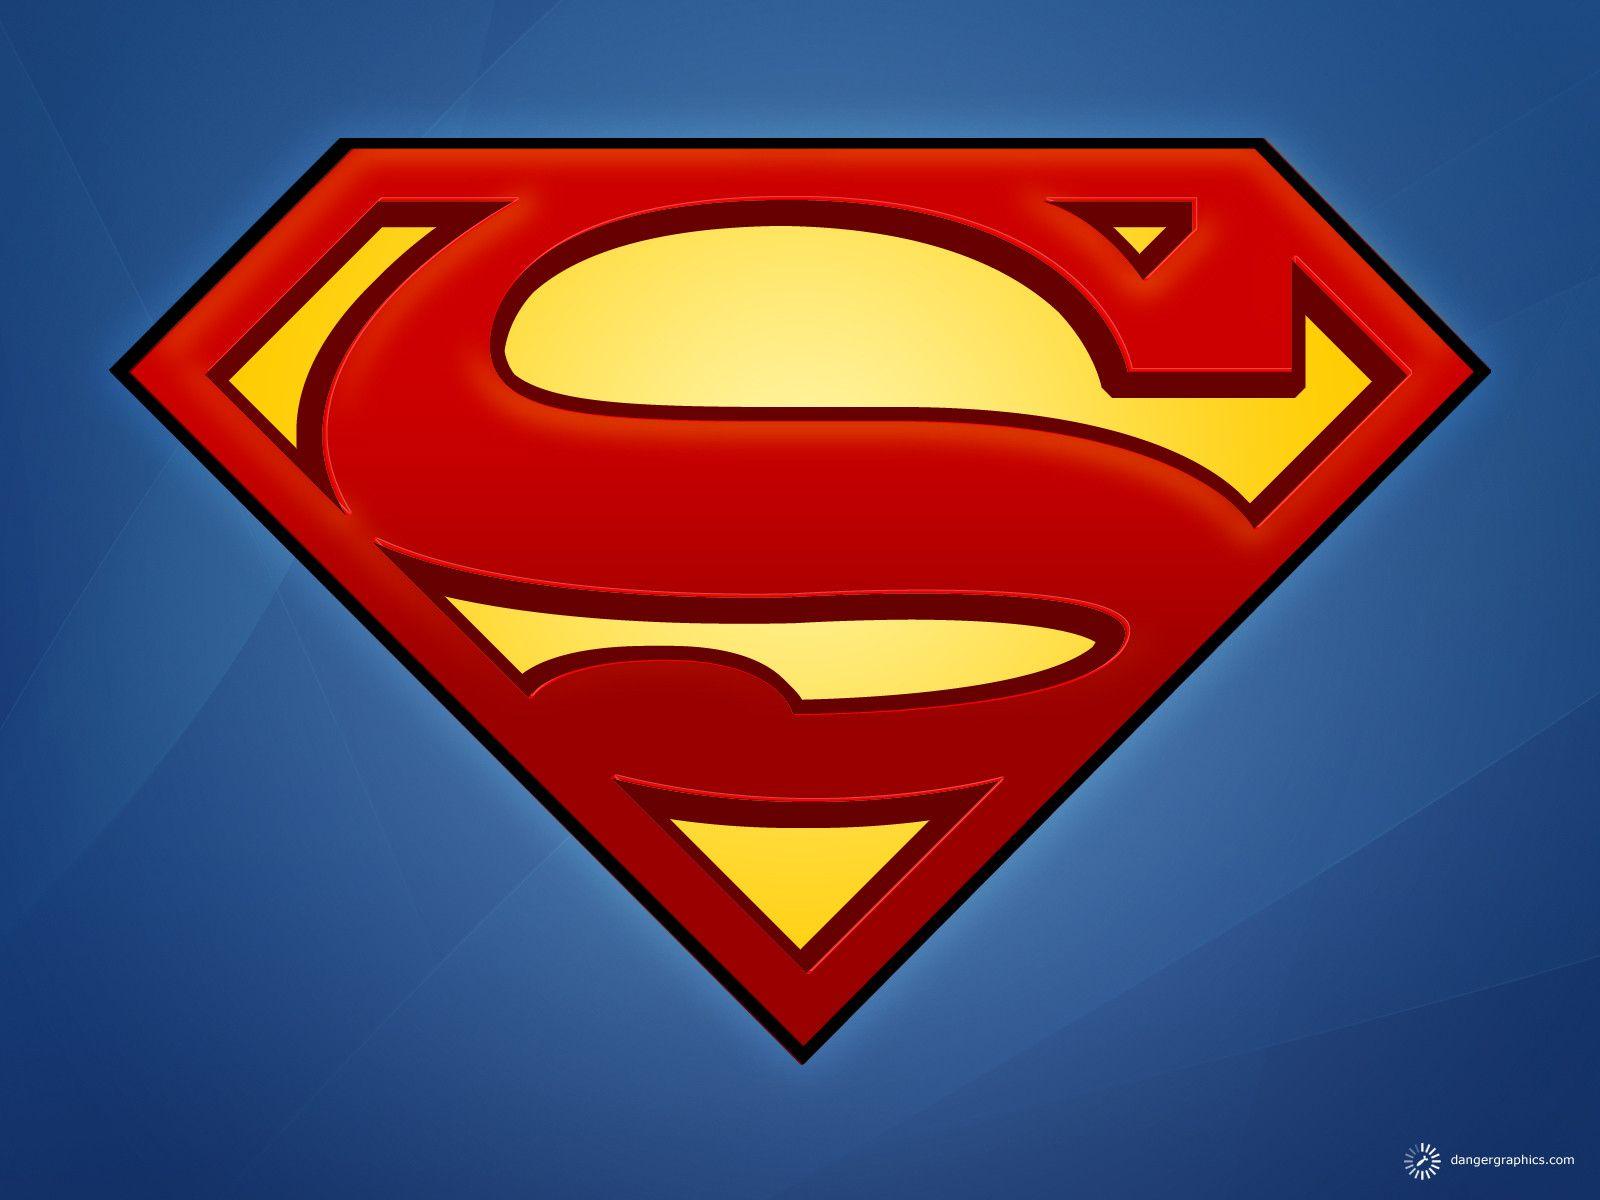 スーパーマンの壁紙,スーパーマン,スーパーヒーロー,架空の人物,正義リーグ,シンボル